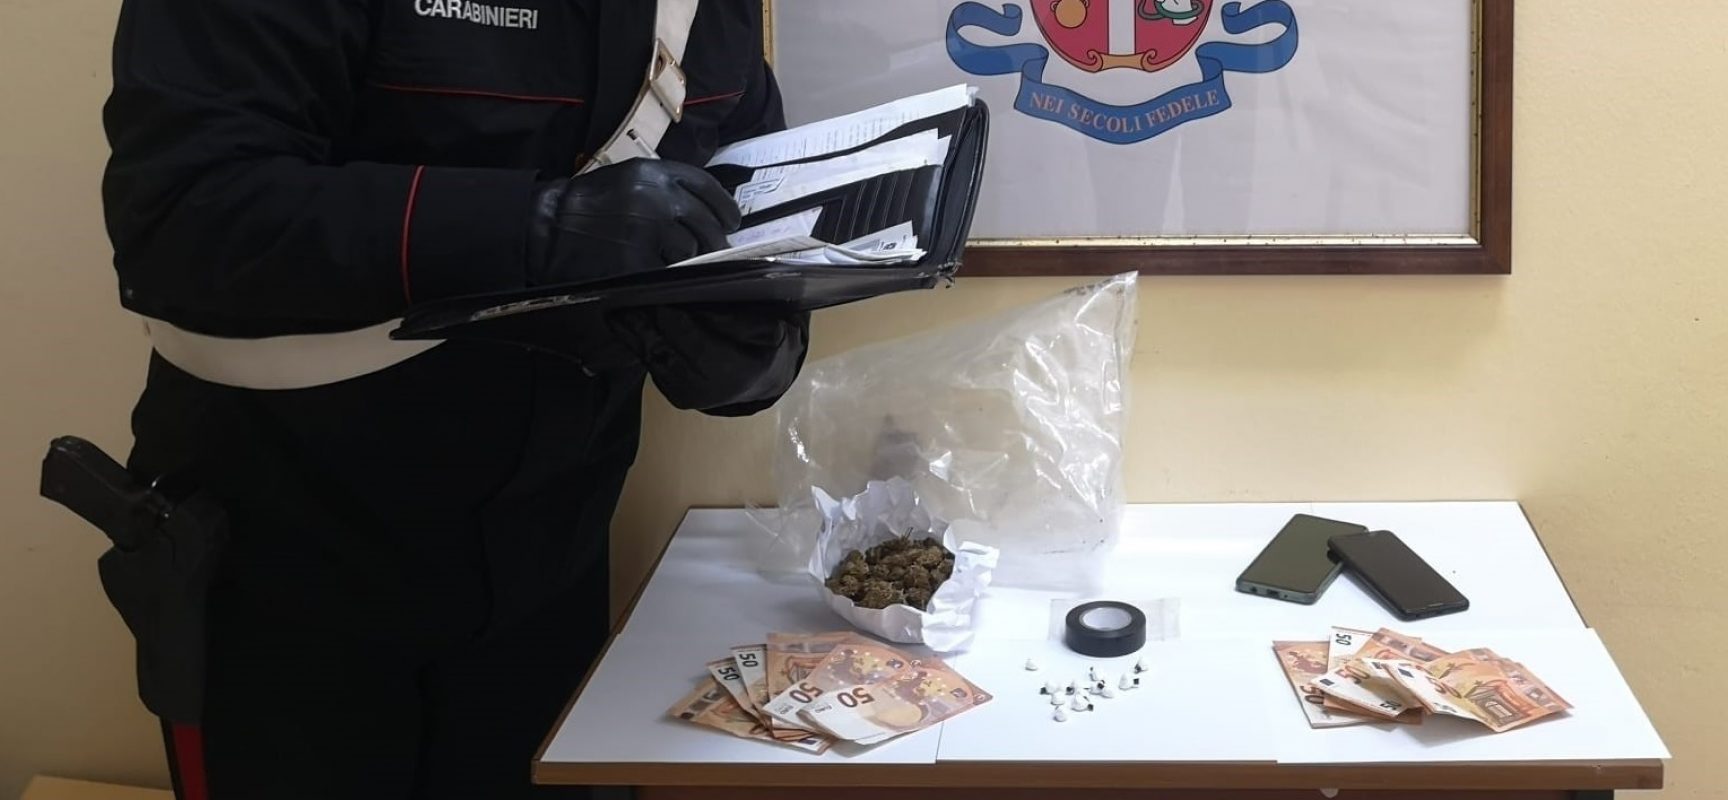 Carabinieri di Bisceglie arrestano 34enne in possesso di tredici dosi di cocaina